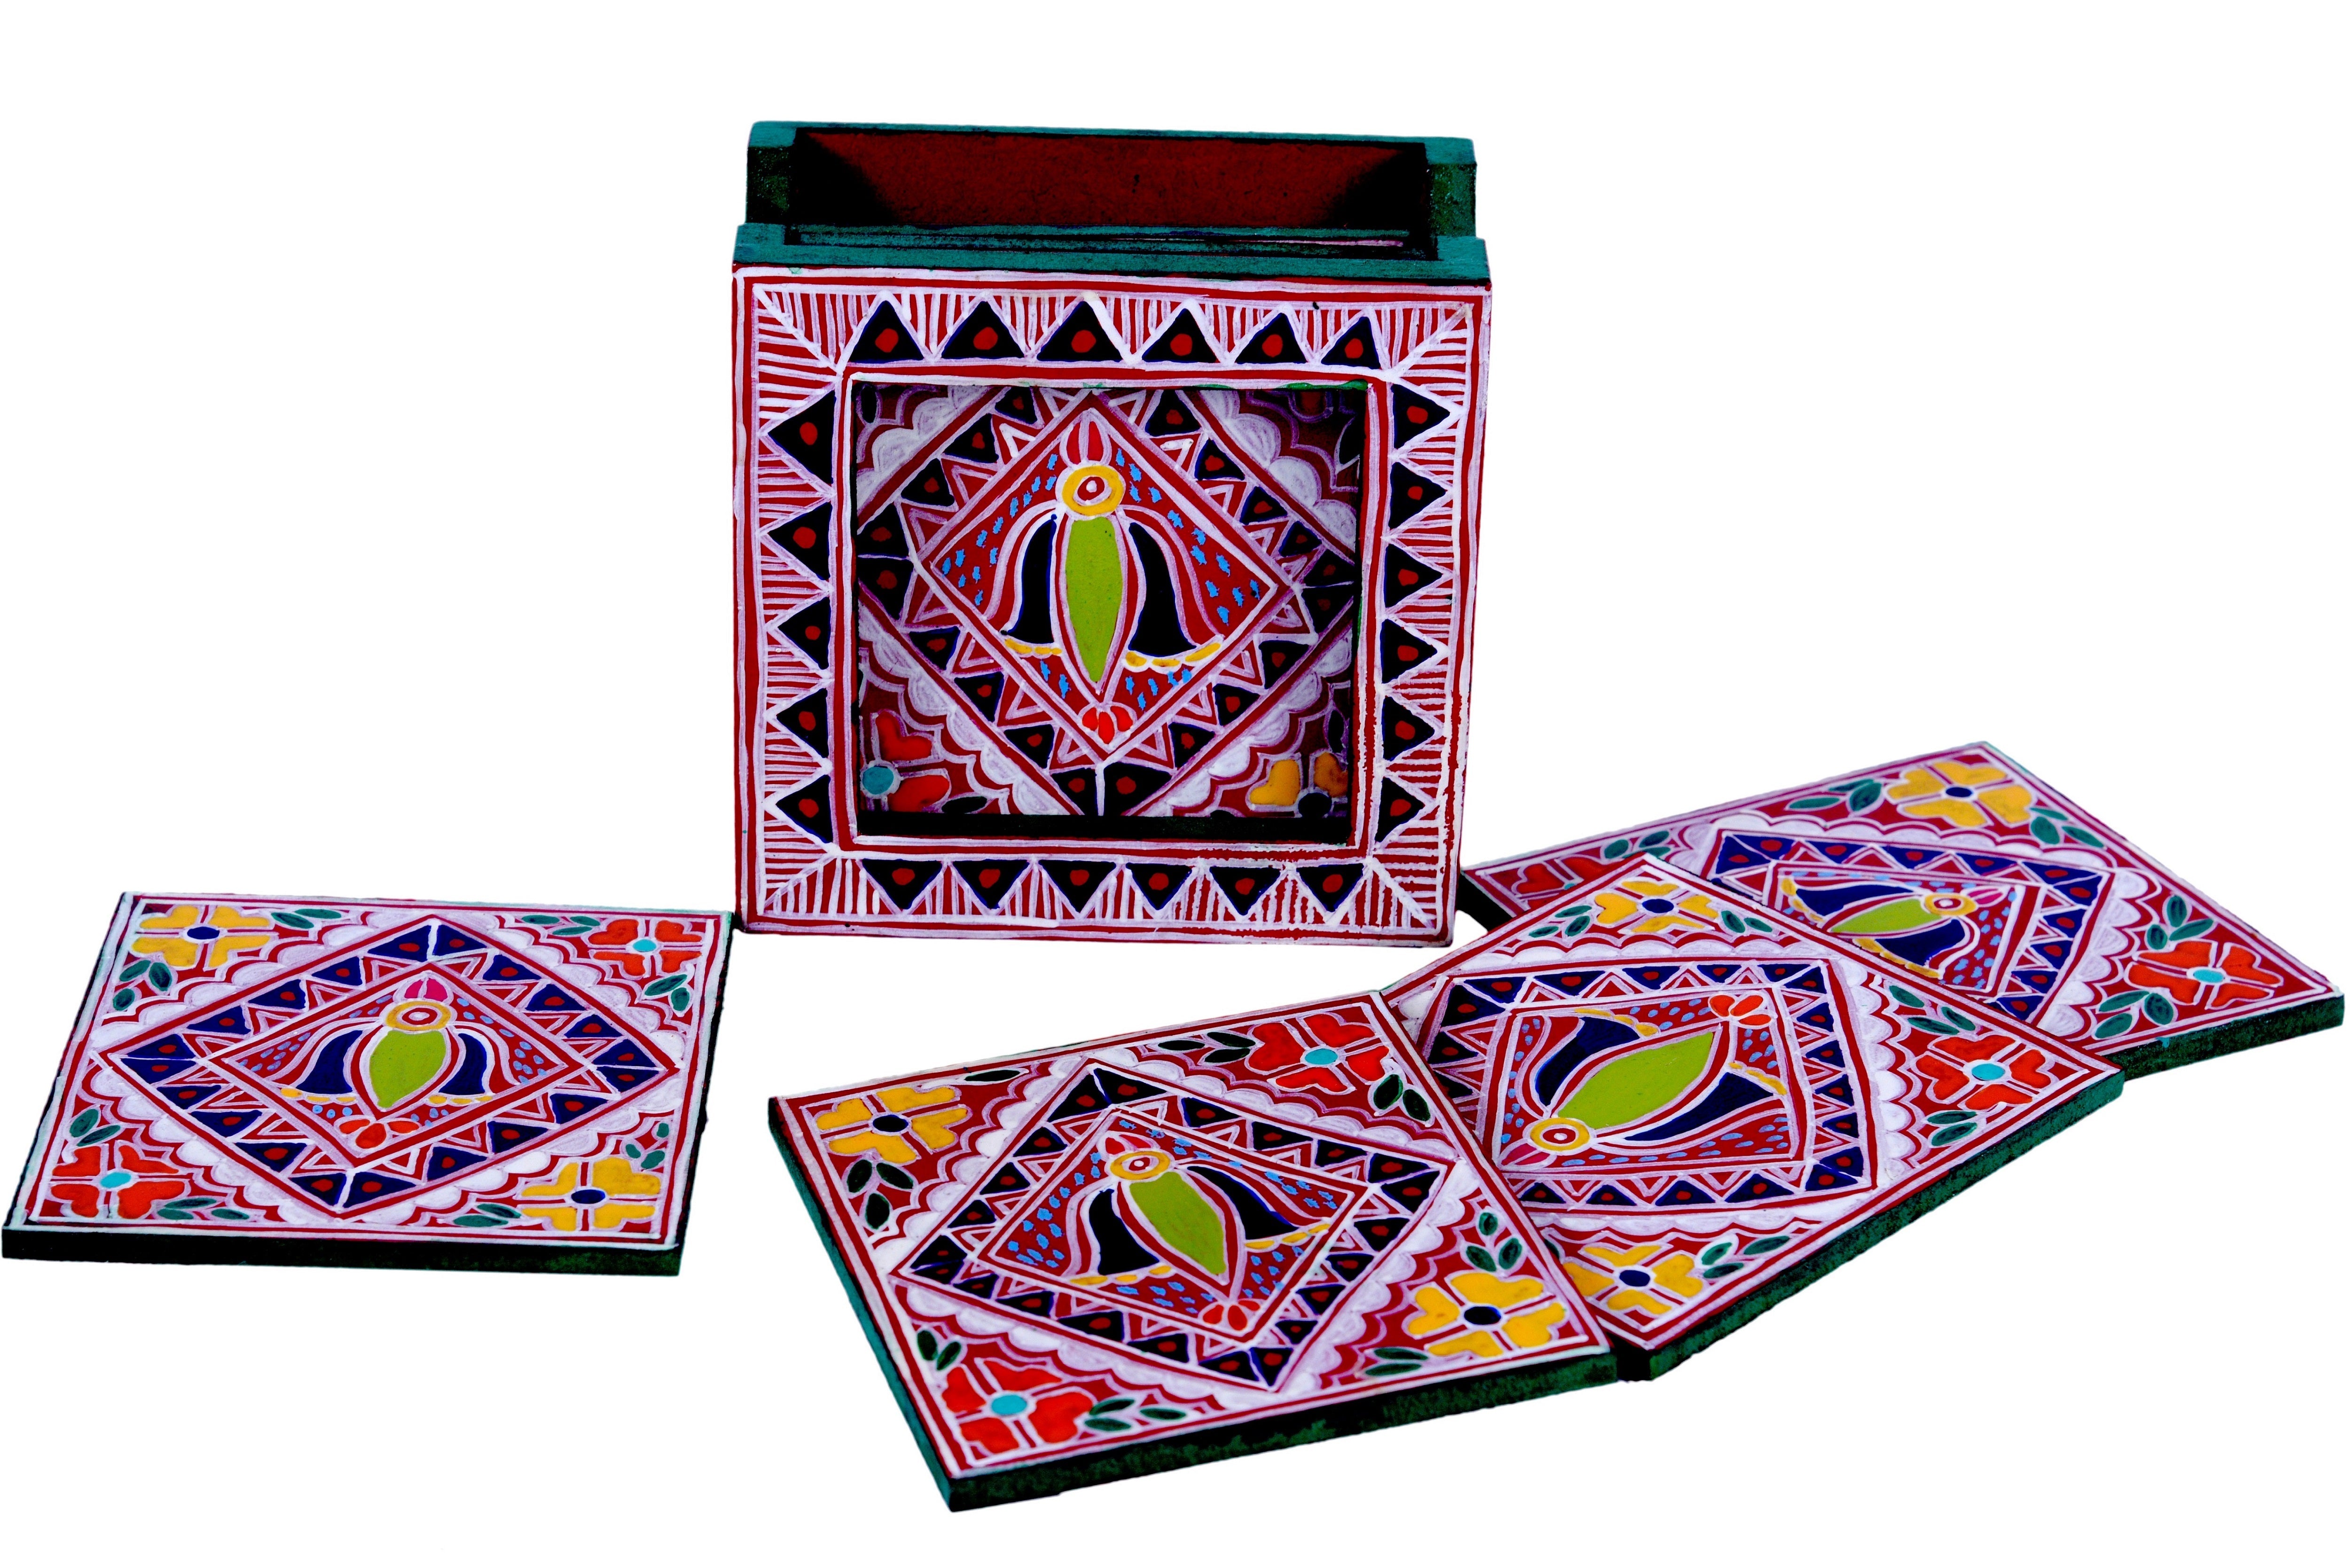 Hand Painted Madhubani Coasters set of 6 with holder - Folk Art Bird